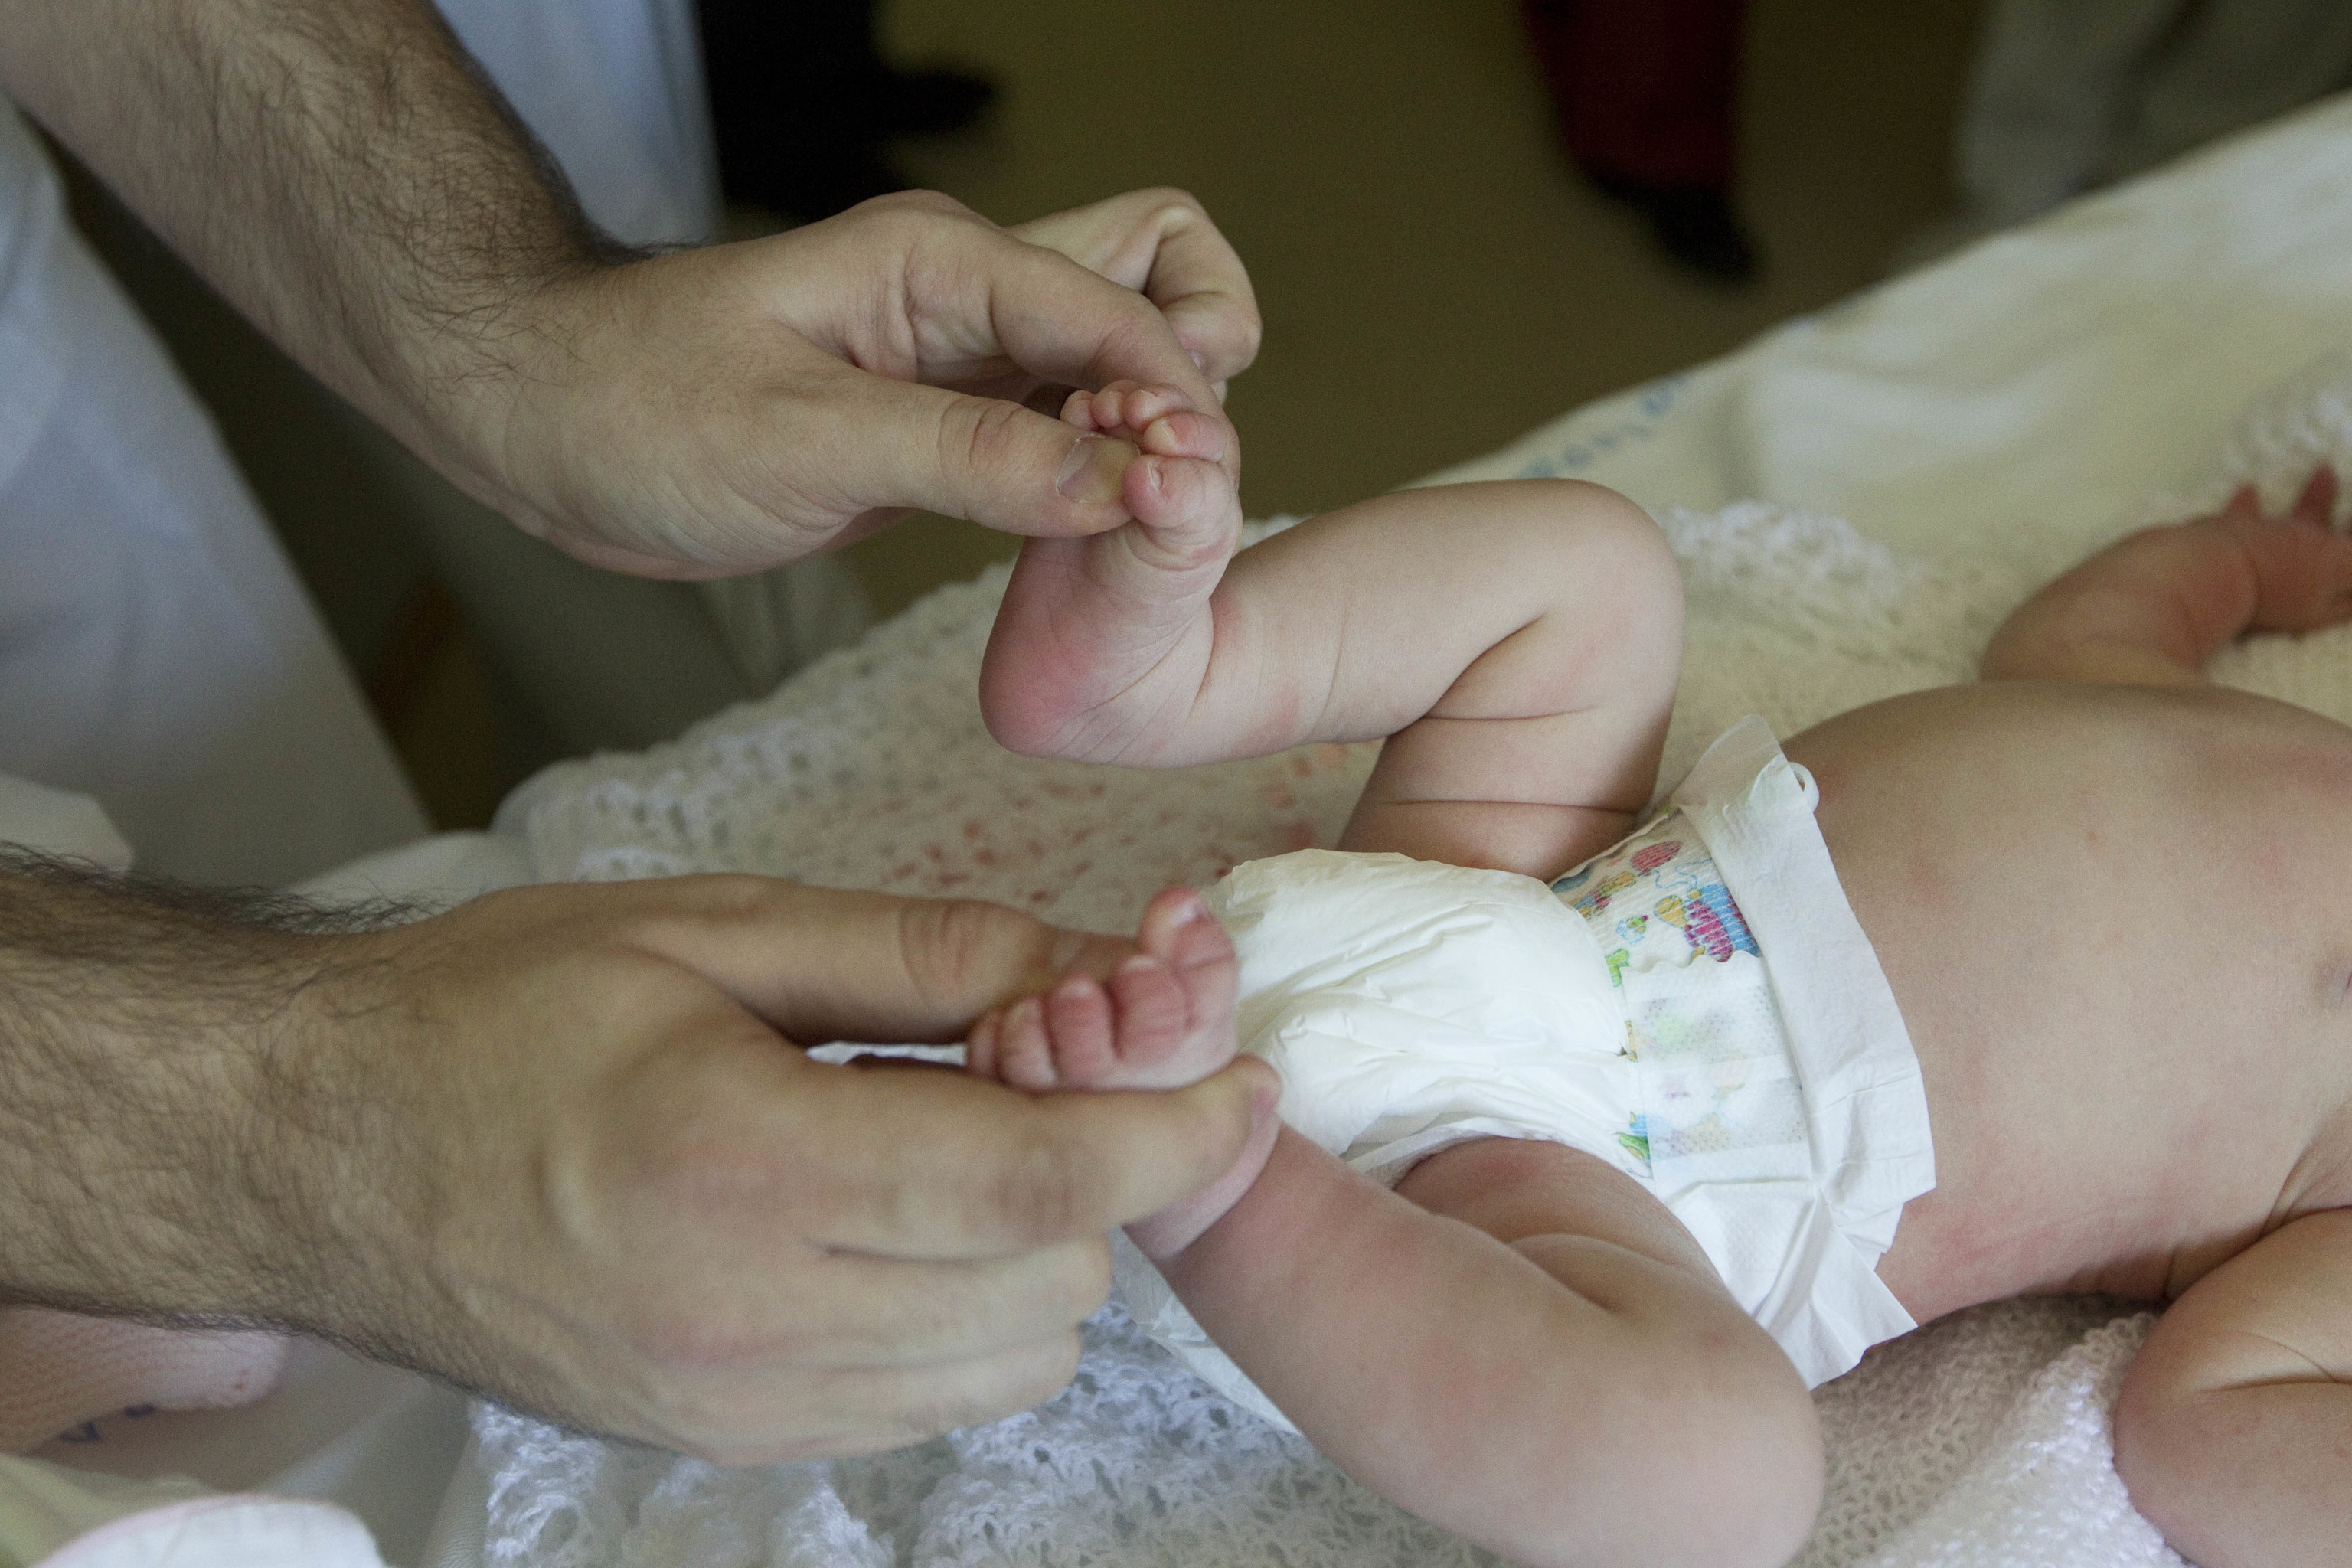 Un sanitario examina a un beb recin nacido.